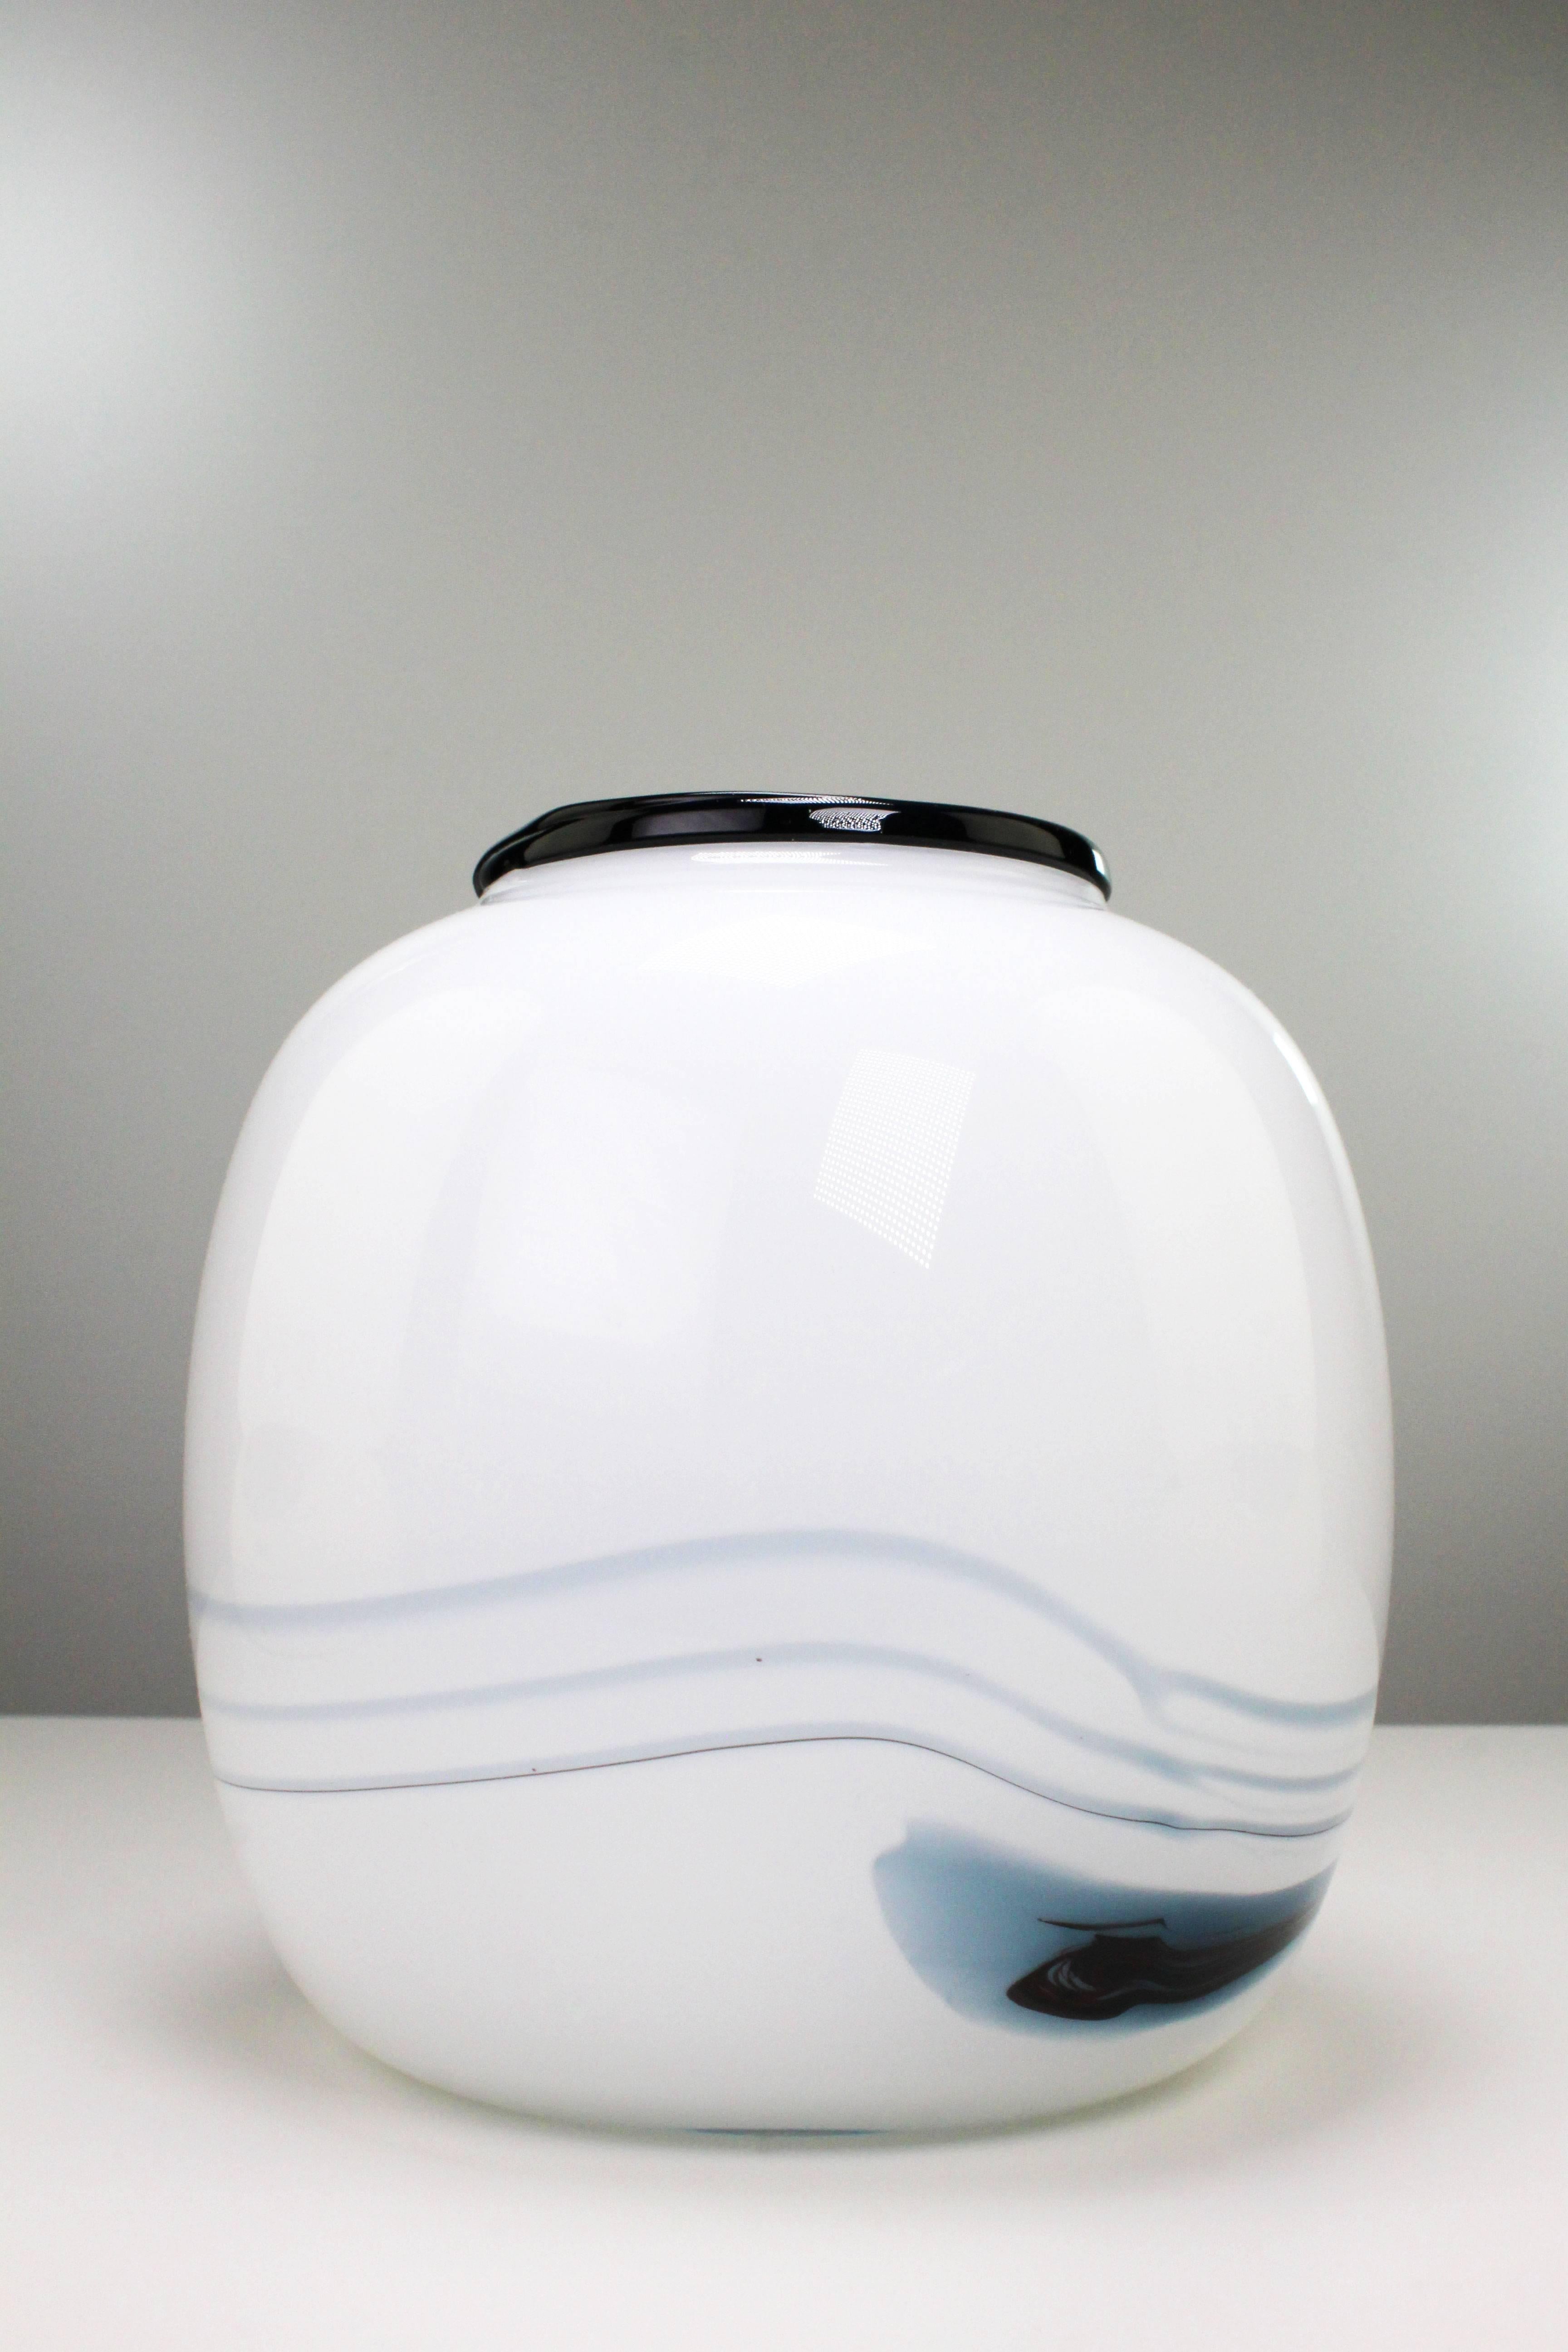 Vase rond lisse moderne danois avec un motif bleu fumé et noir dans un verre blanc laiteux. De la série Atlantis du designer de verre d'art Michael Bang pour le danois Holmegaard. Très bel état, non utilisé. Fabriqué dans la ville de Næstved sur la